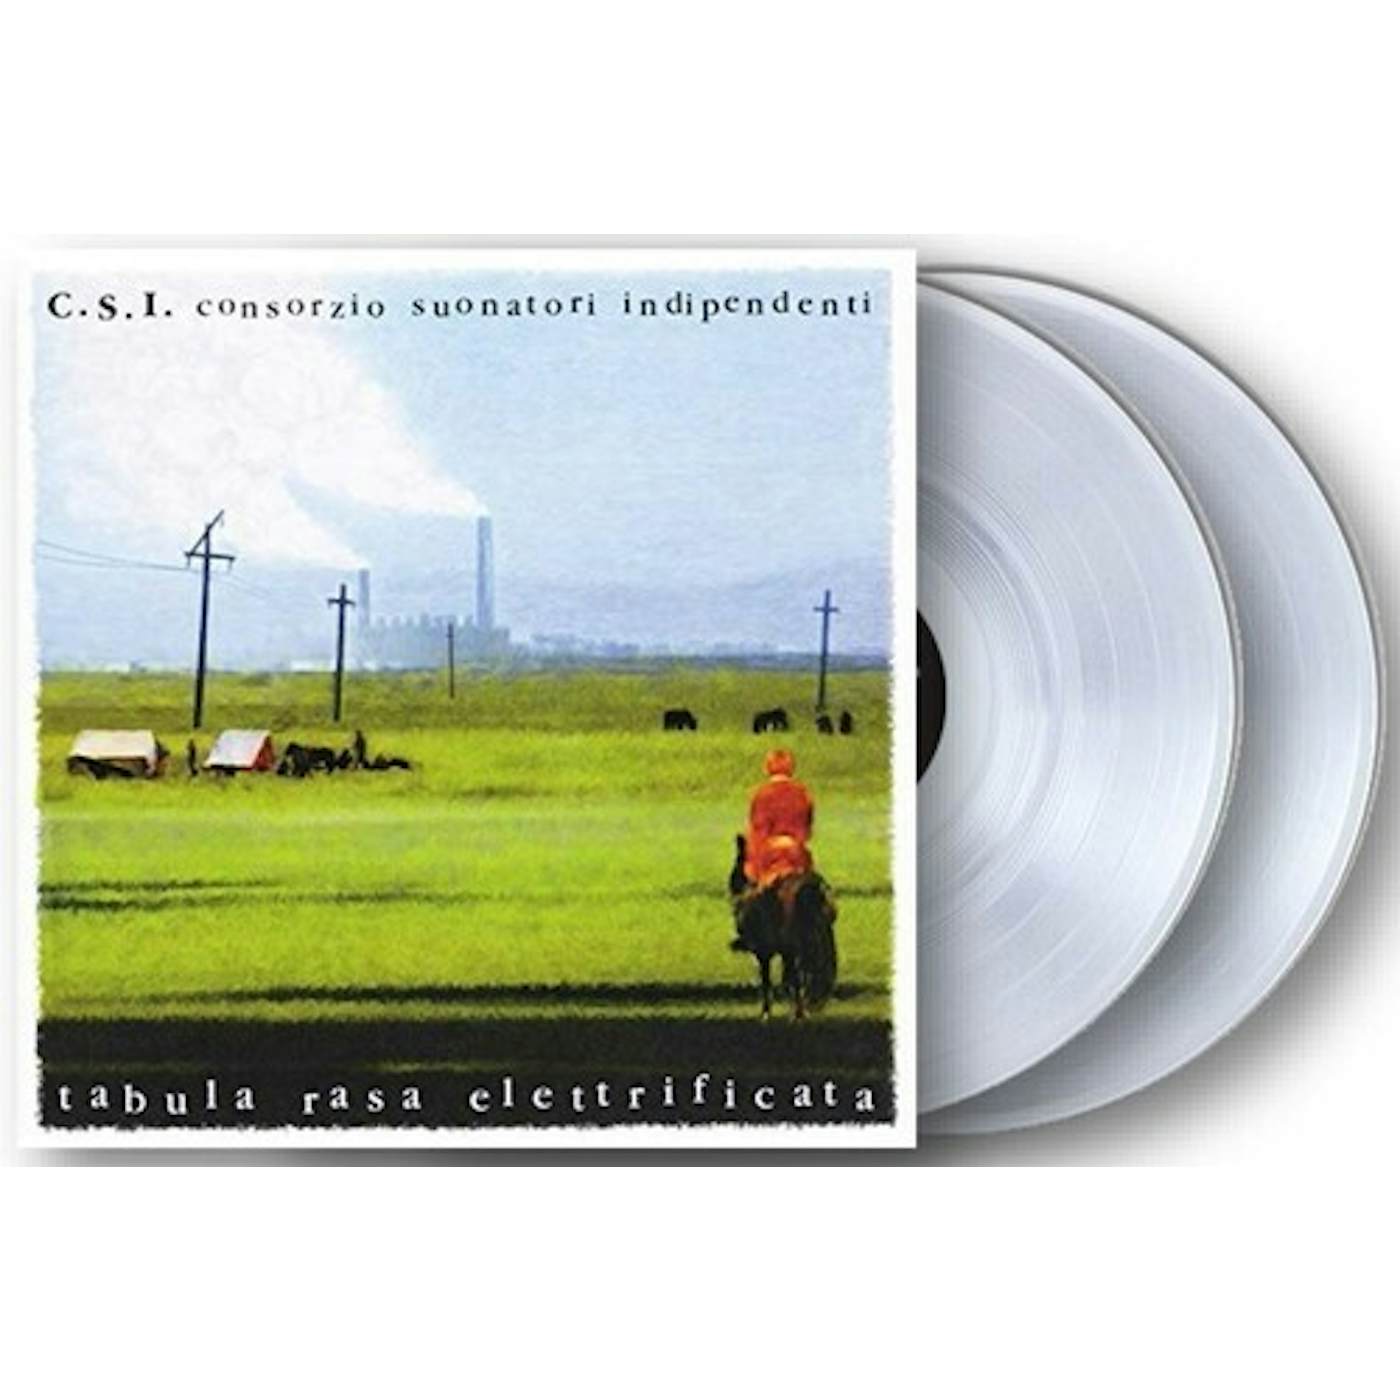 C.S.I. Tabula Rasa Elettrificata Vinyl Record